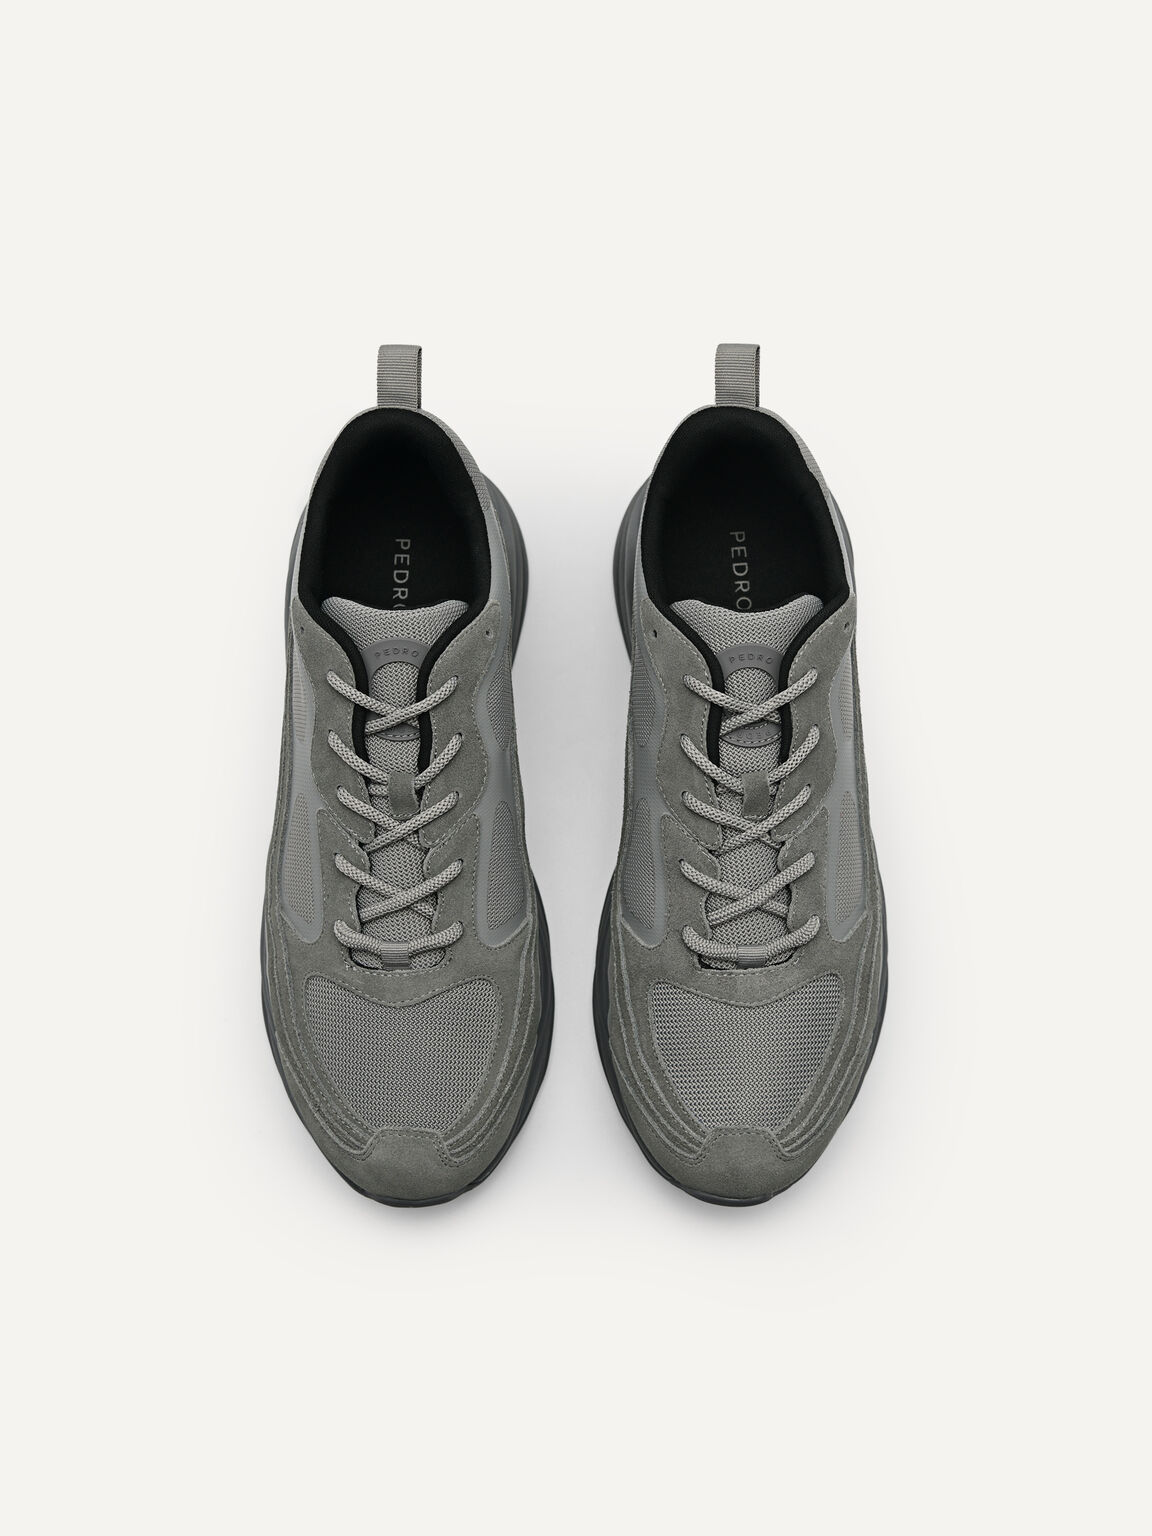 Magma絨面運動鞋, 灰色